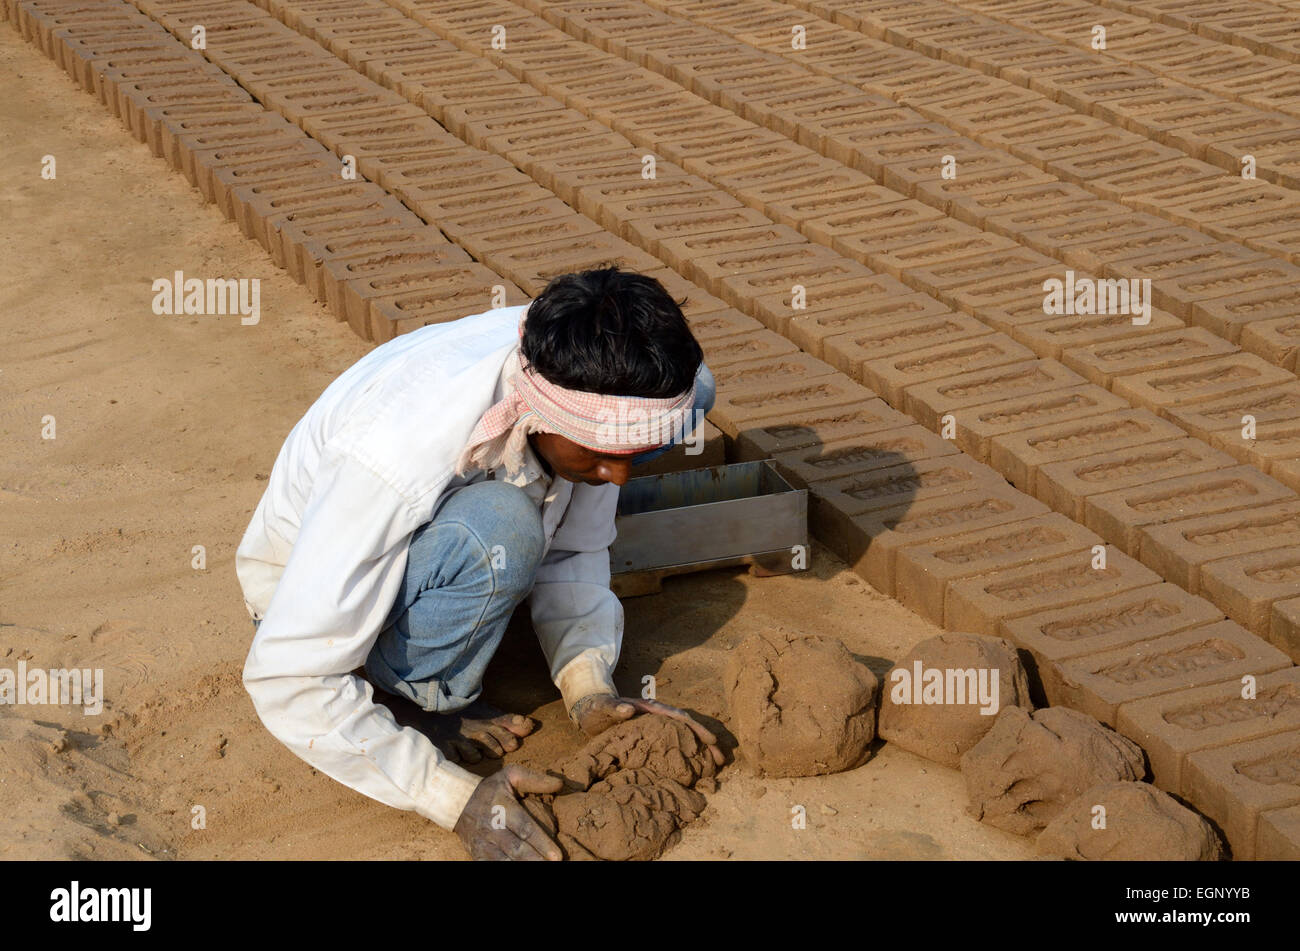 Indian man squatting on the ground making hand made bricks from clay mud Madhya Pradesh India Stock Photo